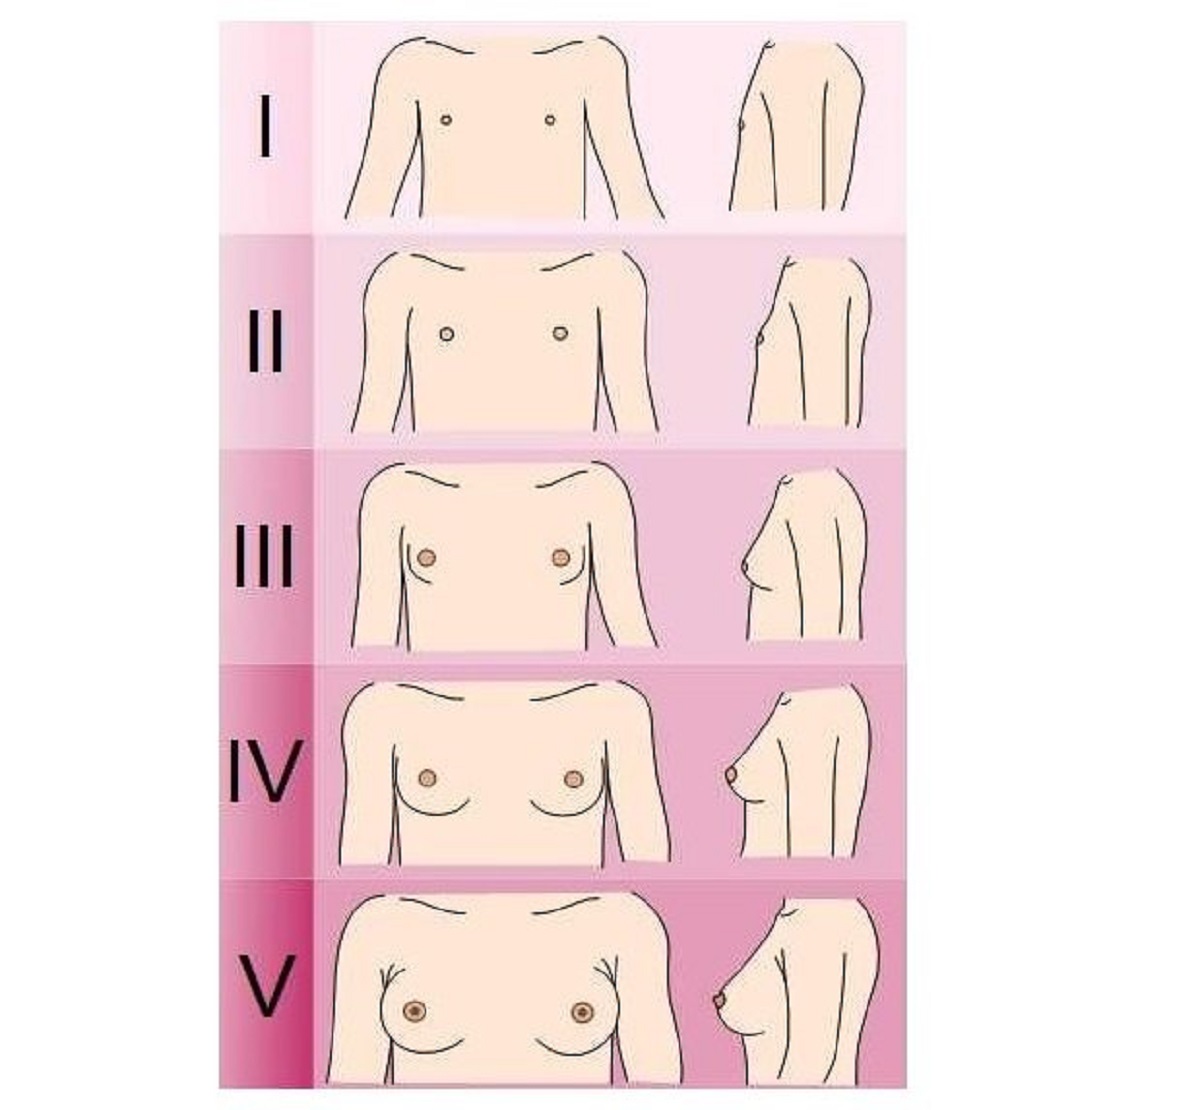 schéma stade pubertaire de la poitrine chez la fille